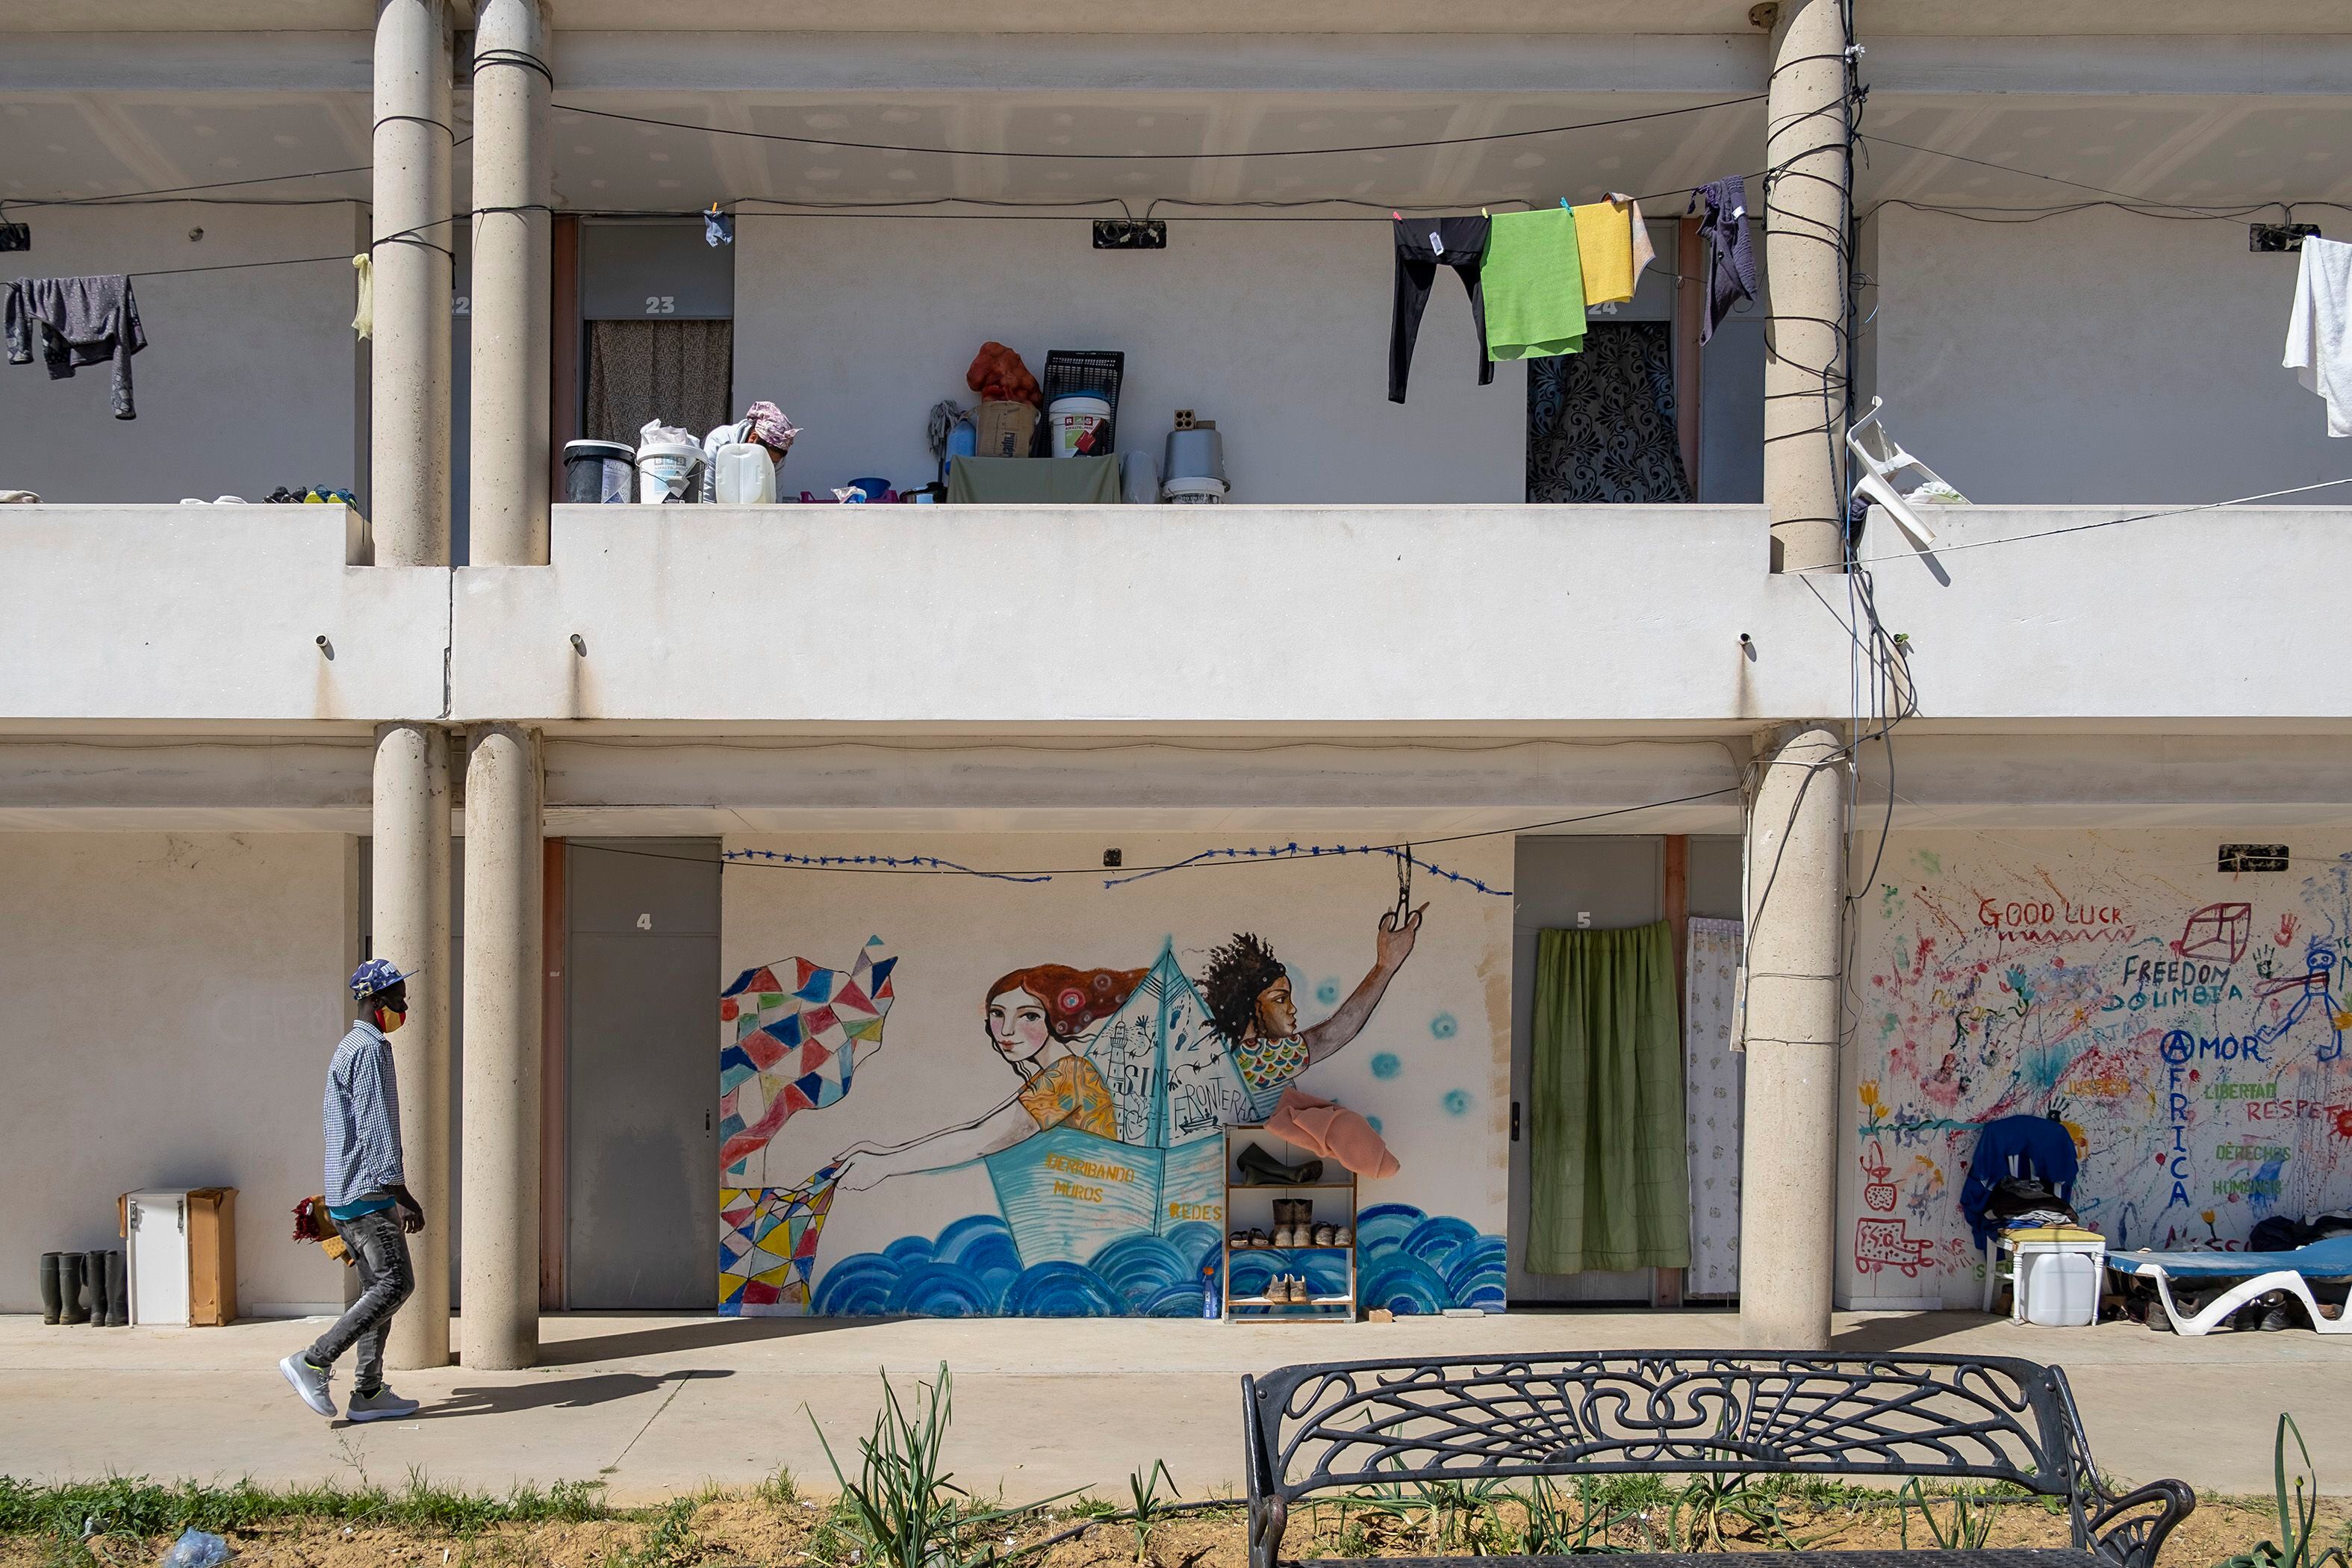 Lo que fue la obra de construcción de un albergue municipal, sirve de alojamiento para decenas de migrantes en Lepe, Huelva.